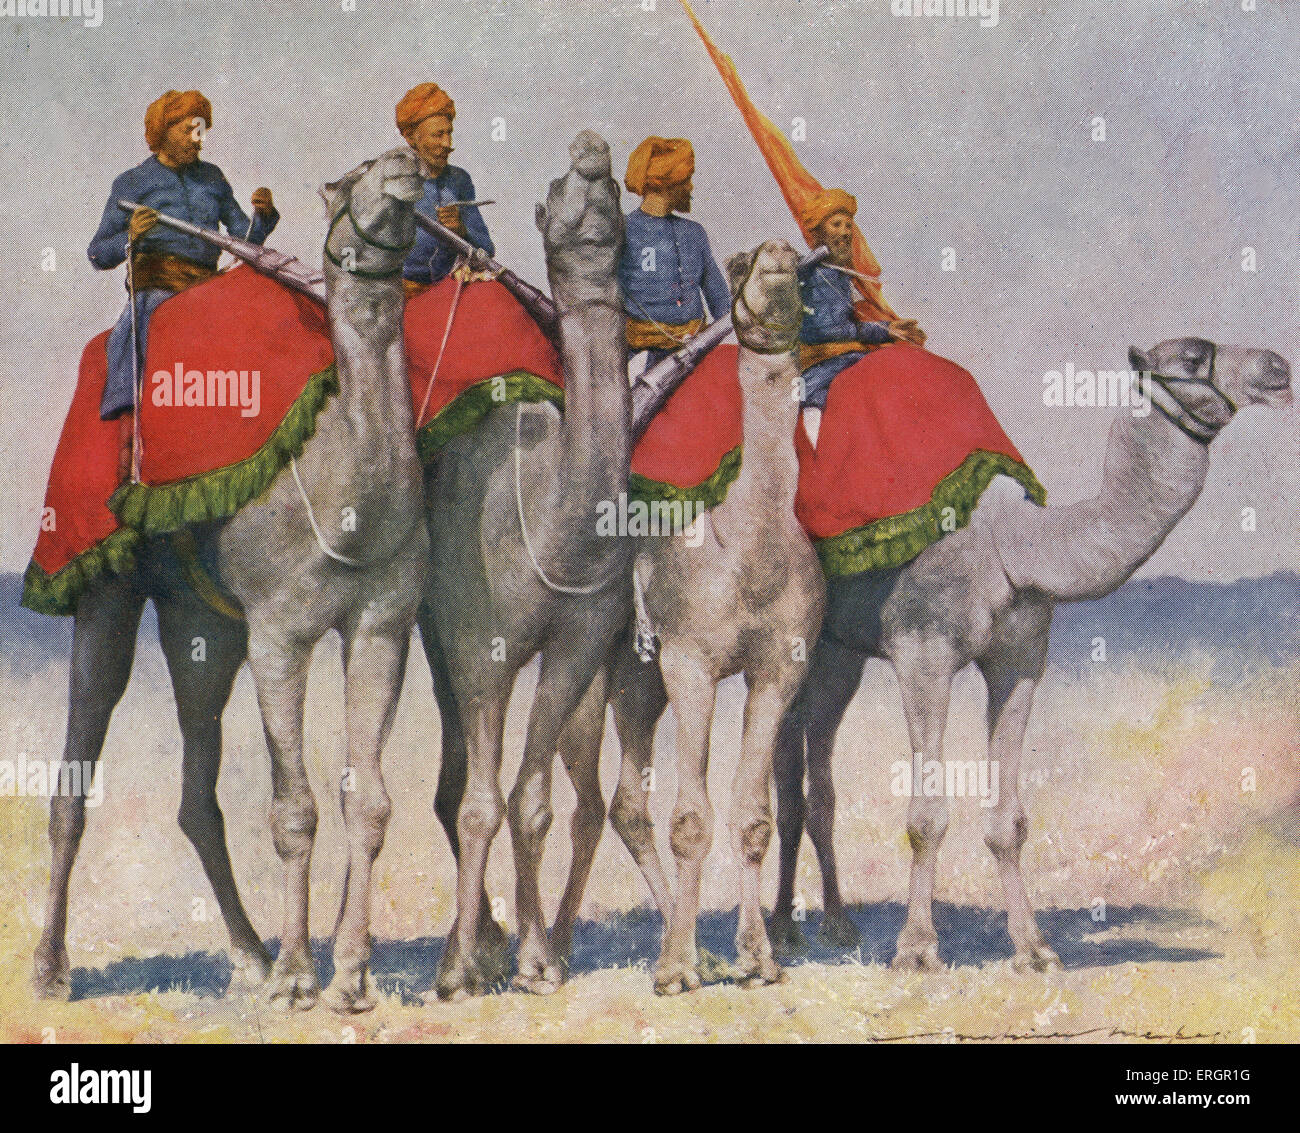 Kamel Kavallerie / Camelry von Alwar, Indien. Soldaten in einer Uniform blau kragenlosen Jacken und orange Turbanen sitzen auf Stockfoto